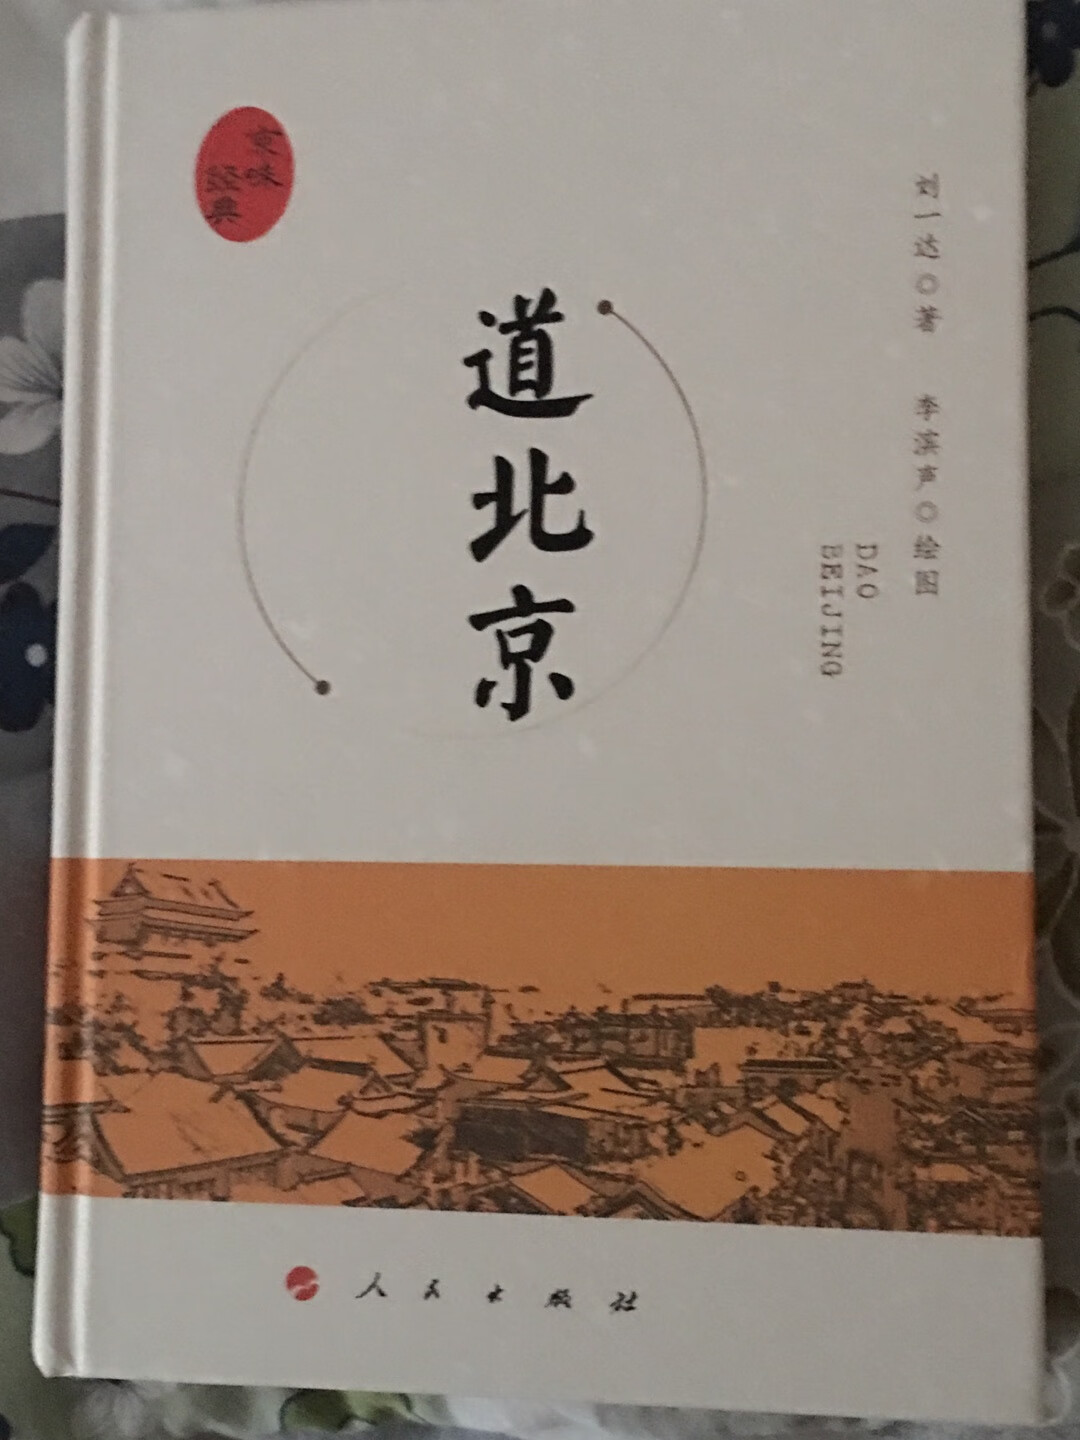 喜欢刘一达先生的京味书籍，非常欣赏。